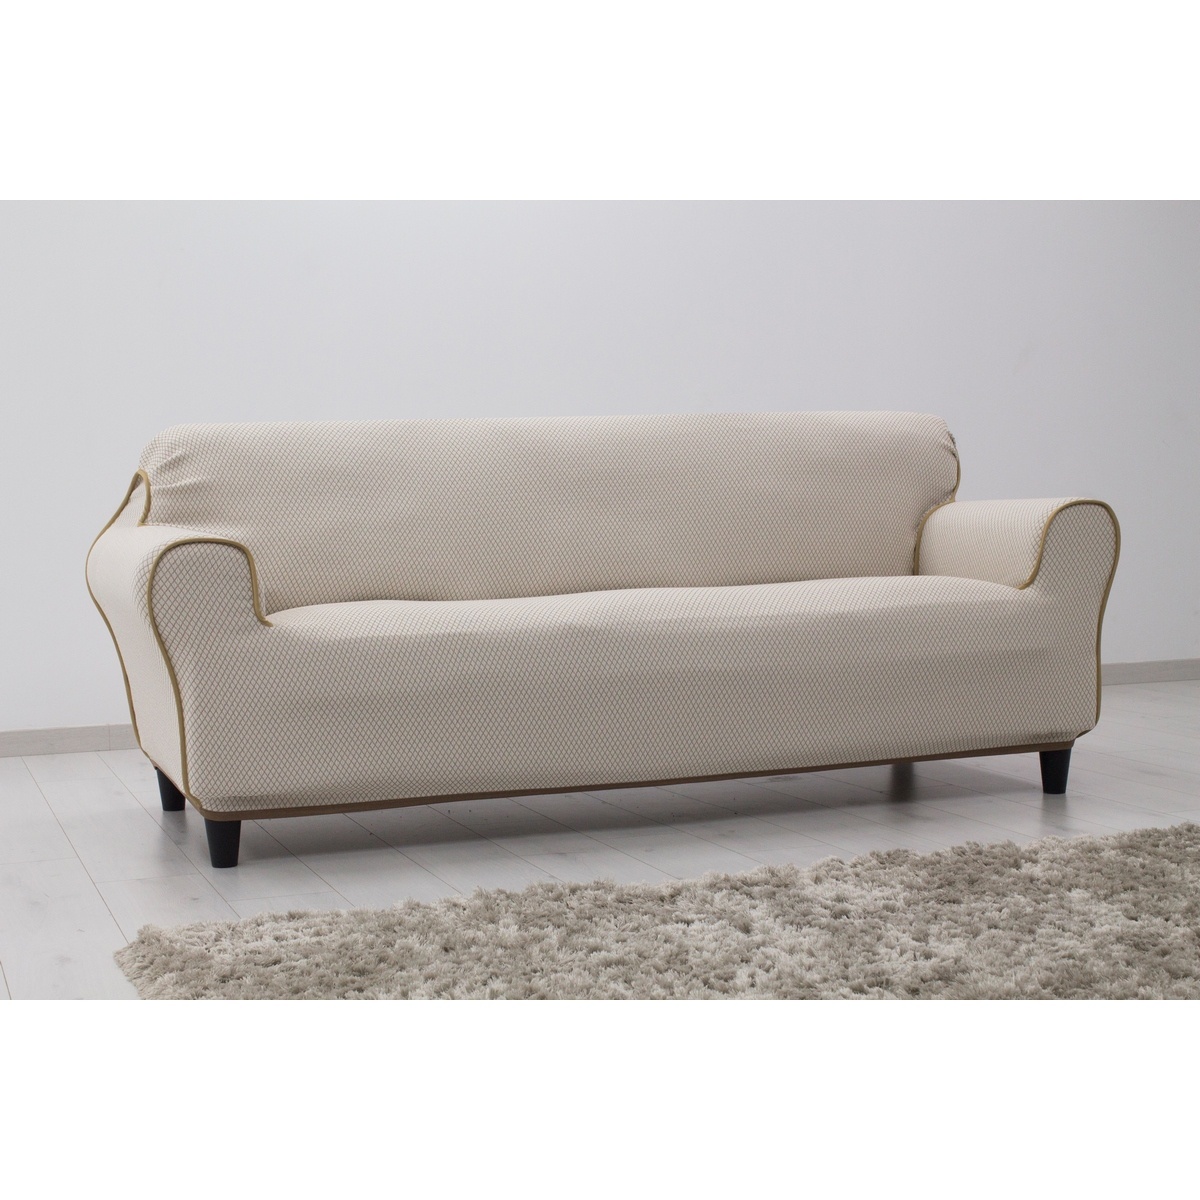  IRPIN multielasztikus kanapéhuzat bézs, 140-180 cm, 140 - 180 cm